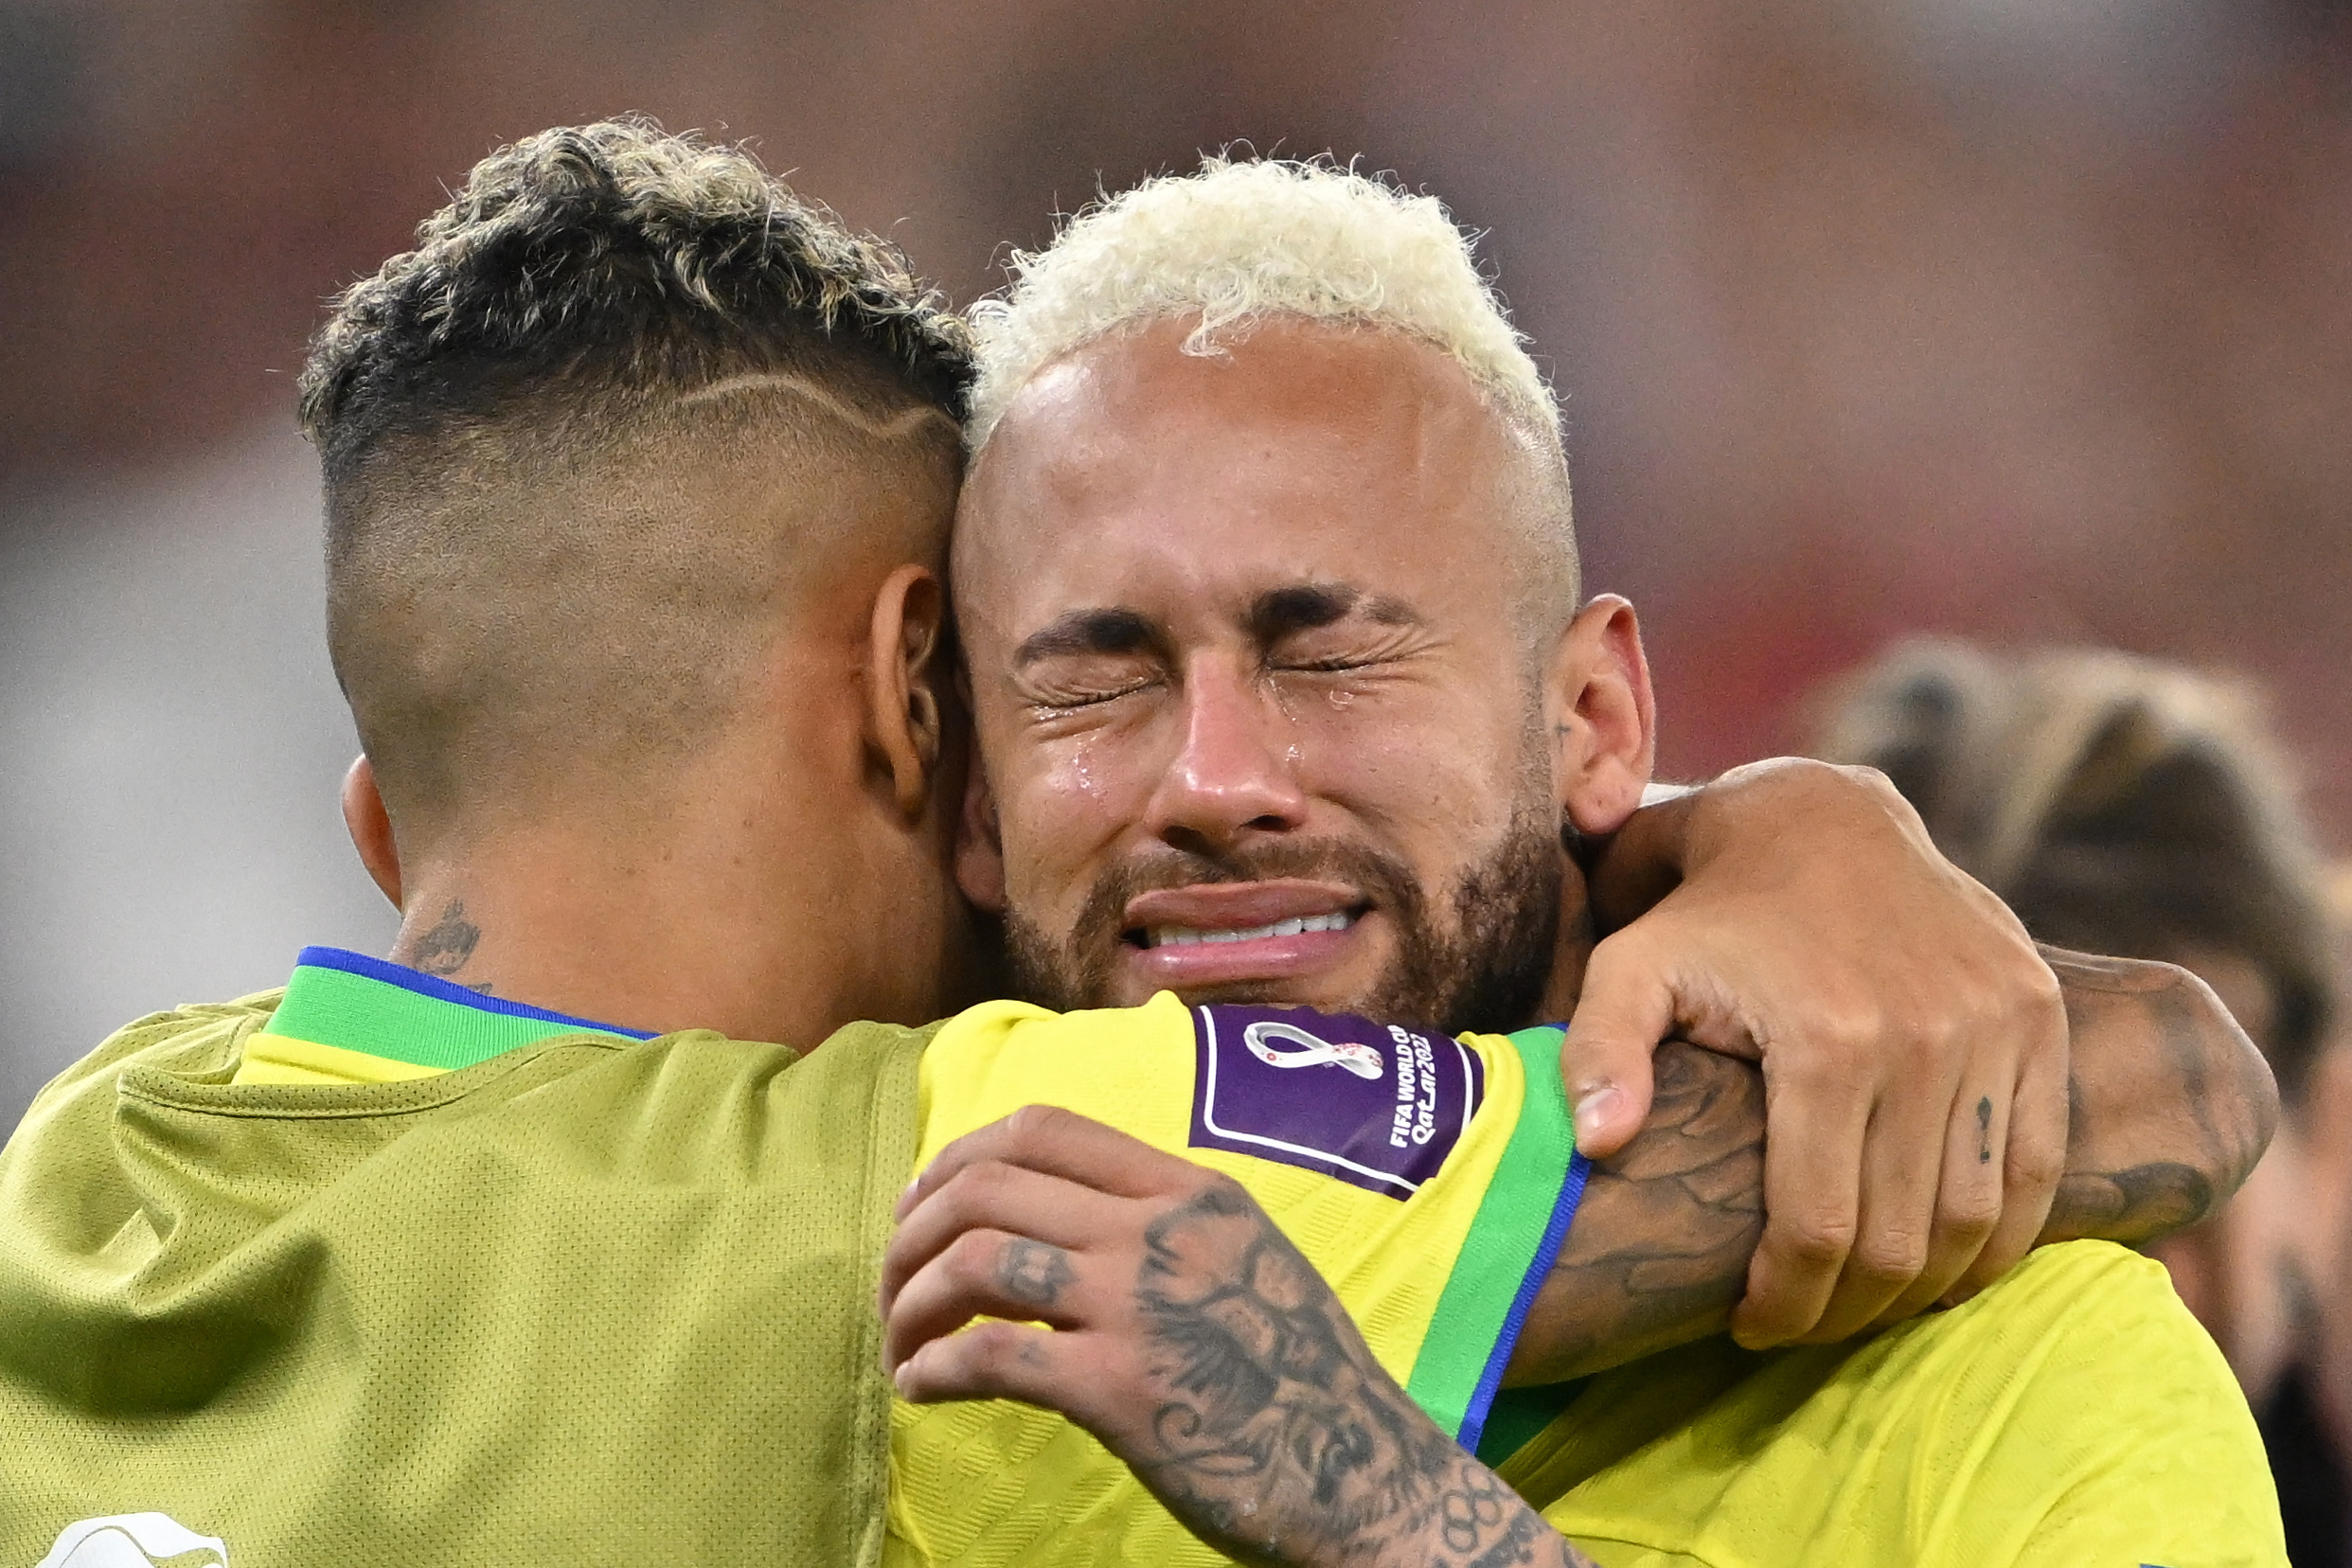 World Cup, giải đấu bóng đá lớn nhất hành tinh, đã truyền cảm hứng và niềm tự hào cho bao thế hệ. Hãy cùng xem hình ảnh của Neymar để xem anh ấy đã có những khoảnh khắc huy hoàng tại giải đấu này.